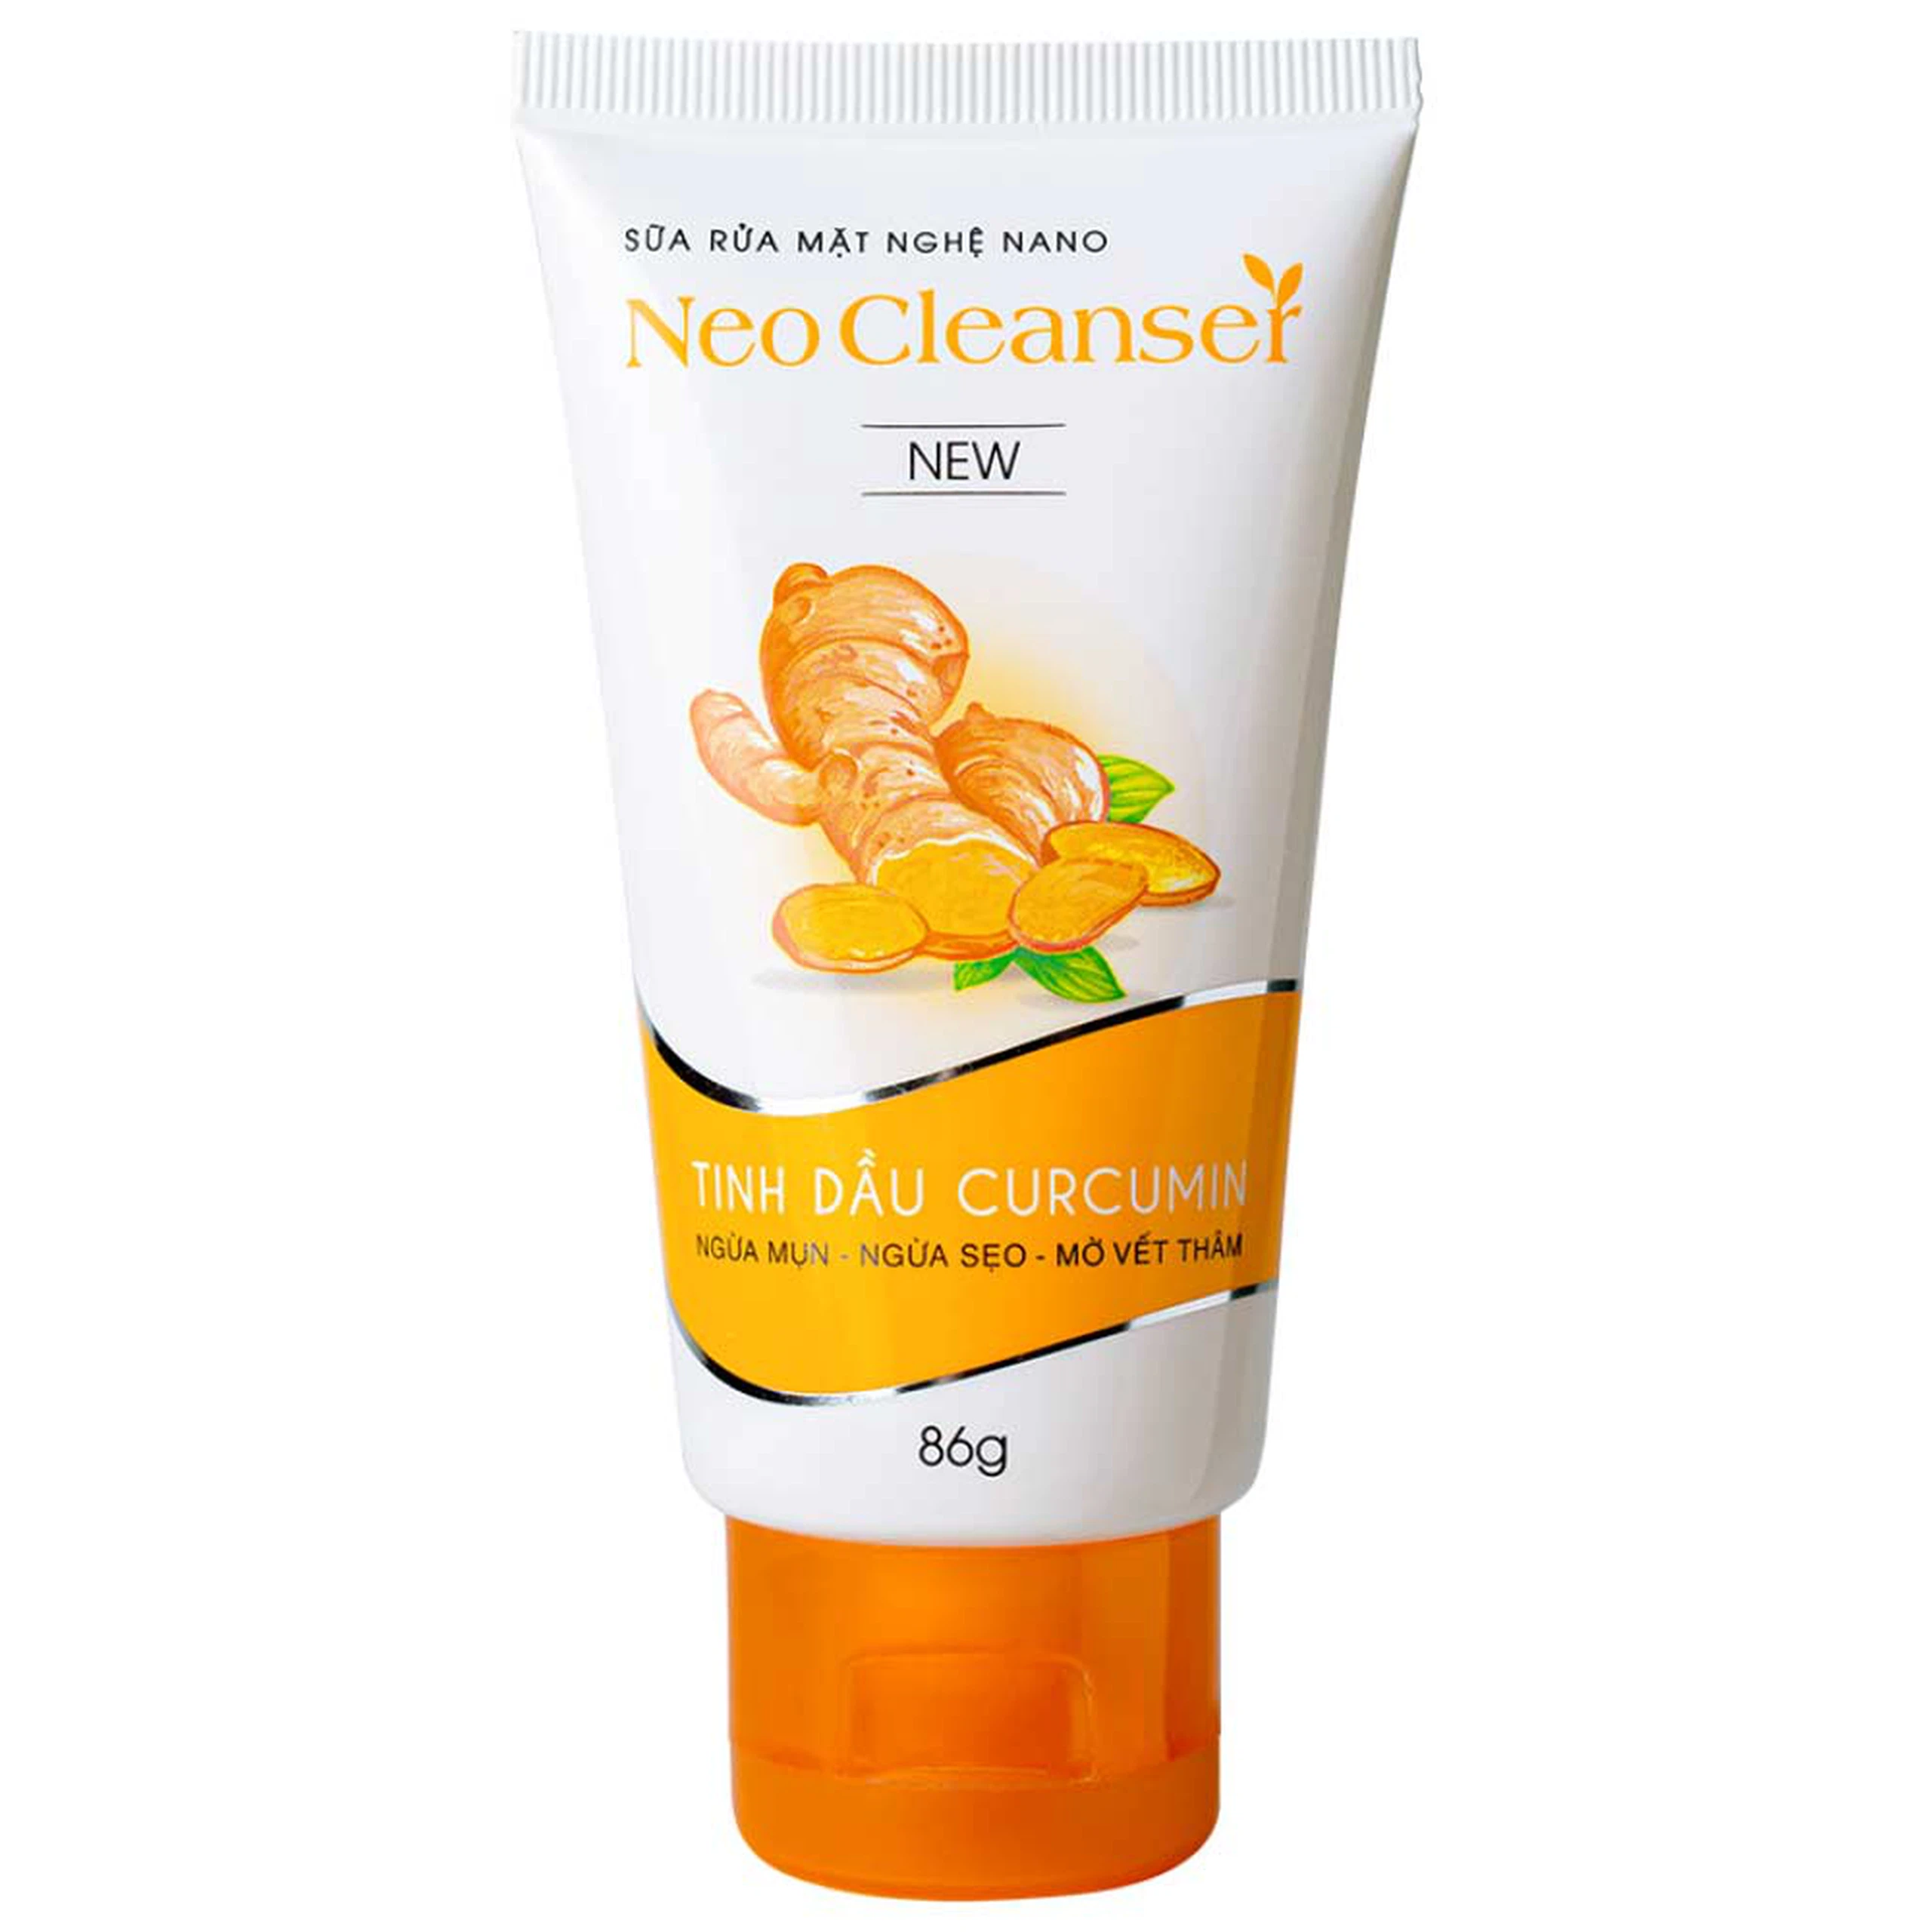 Sữa rửa mặt nghệ Nano Neo Cleanser ngừa mụn, ngừa sẹo, mờ vết thâm (86g)